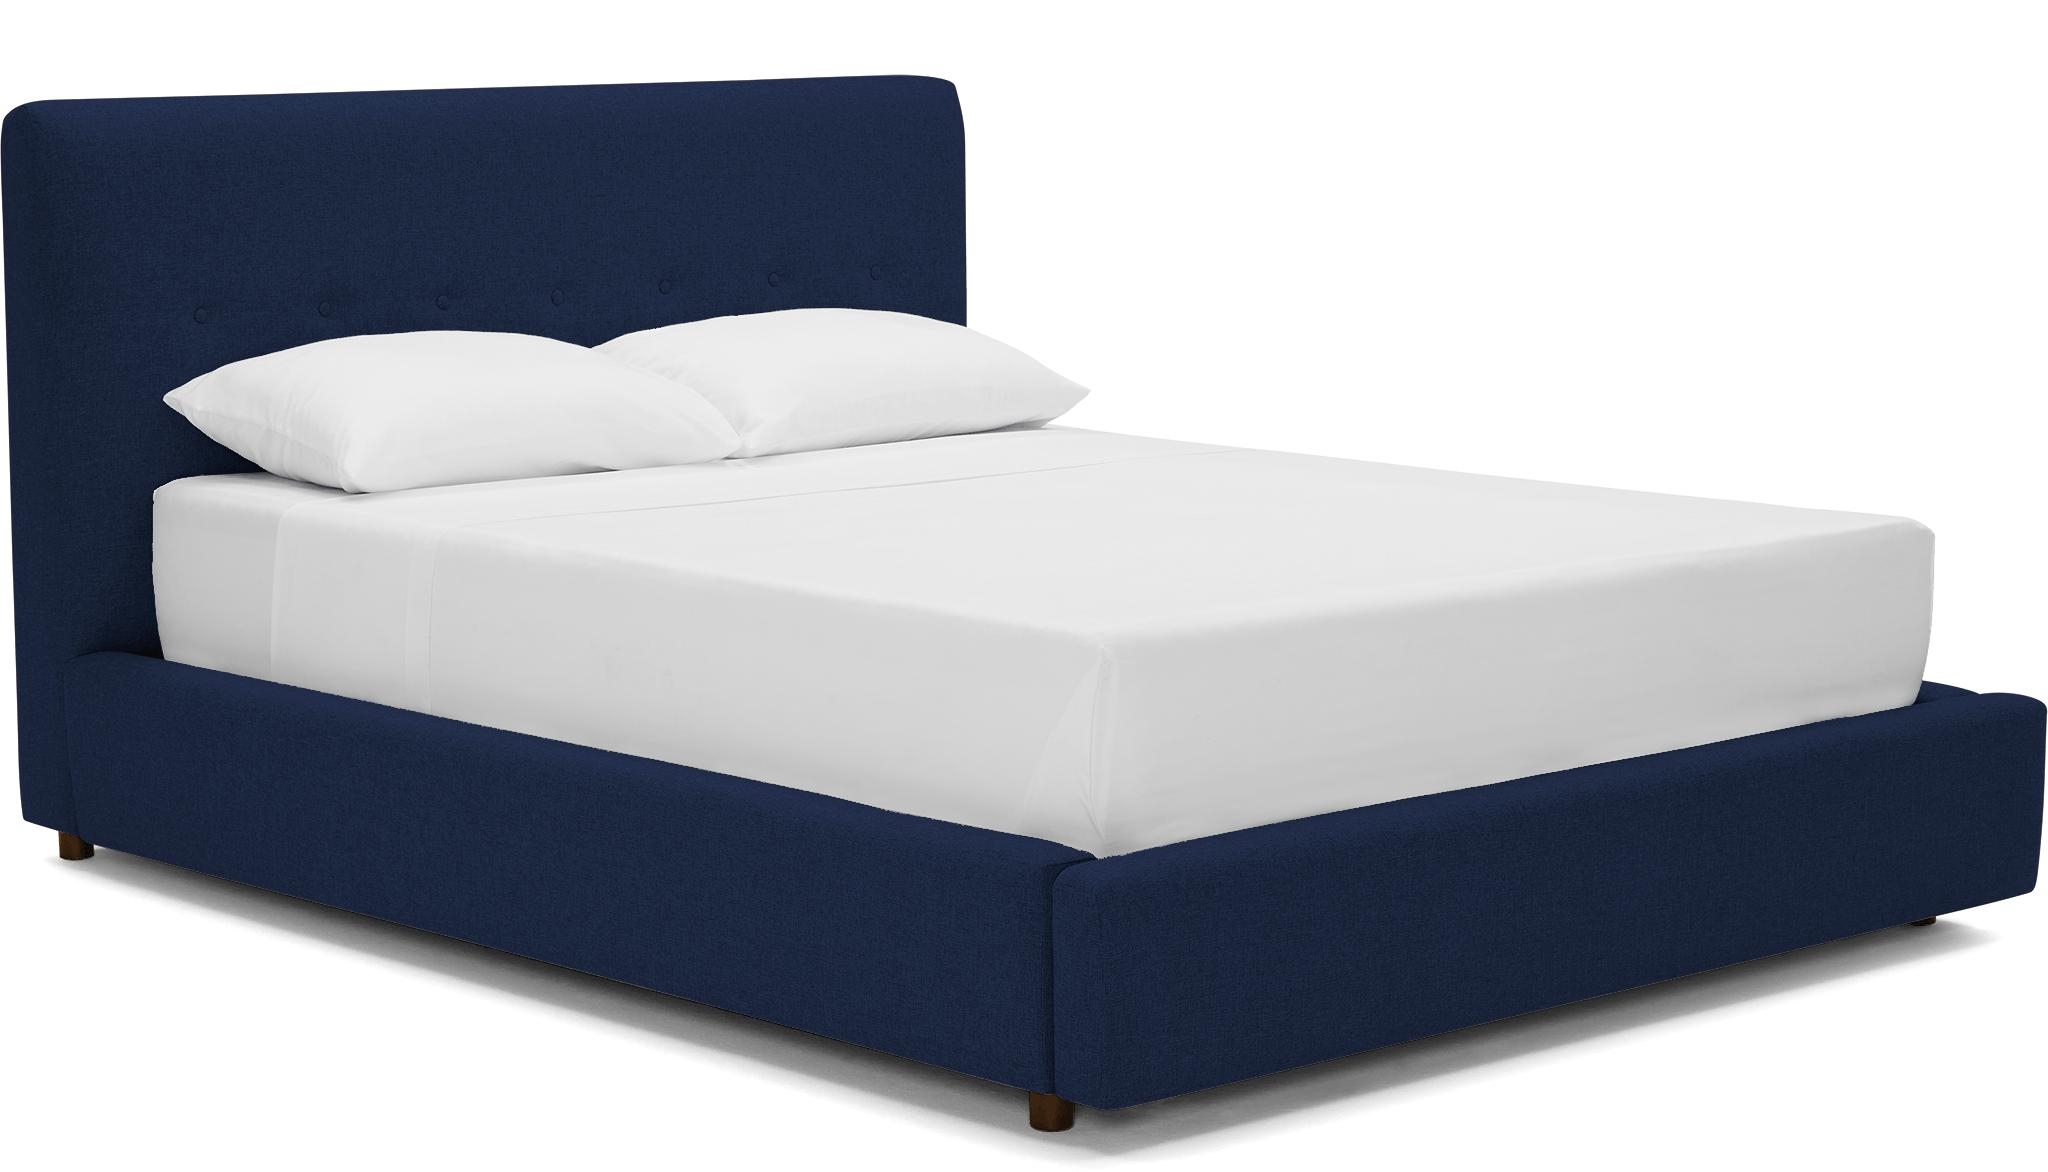 Blue Alvin Mid Century Modern Storage Bed - Royale Cobalt - Mocha - Eastern King - Image 1